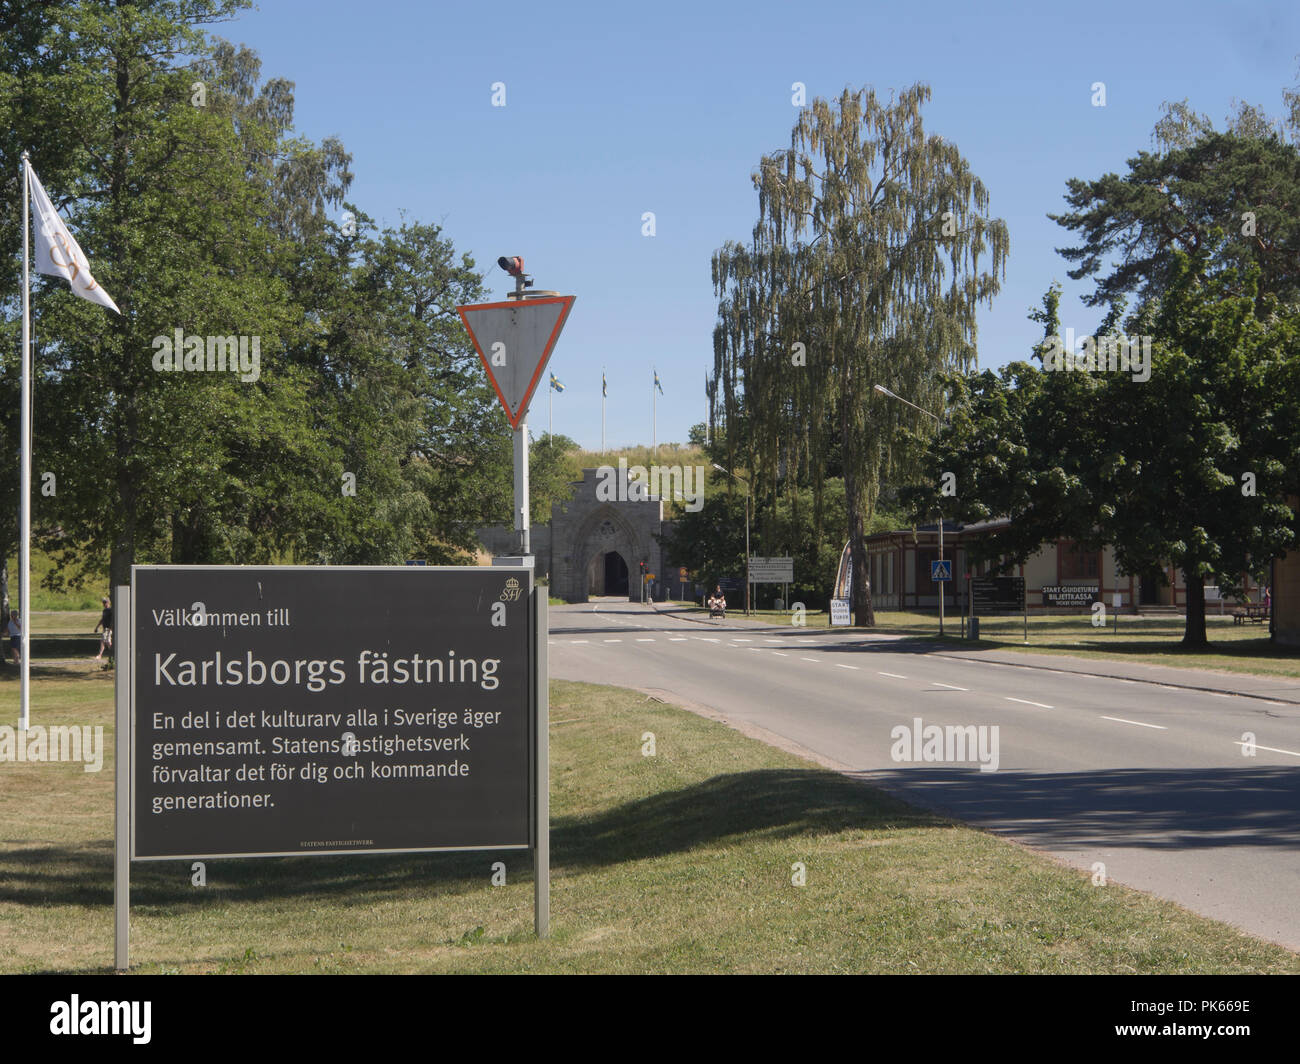 Fortaleza Karlsborg en el condado de Västra Götaland, en Suecia fue construido como defensa central y la reserva de capital, ahora un idílico y variadas atracciones turísticas Foto de stock